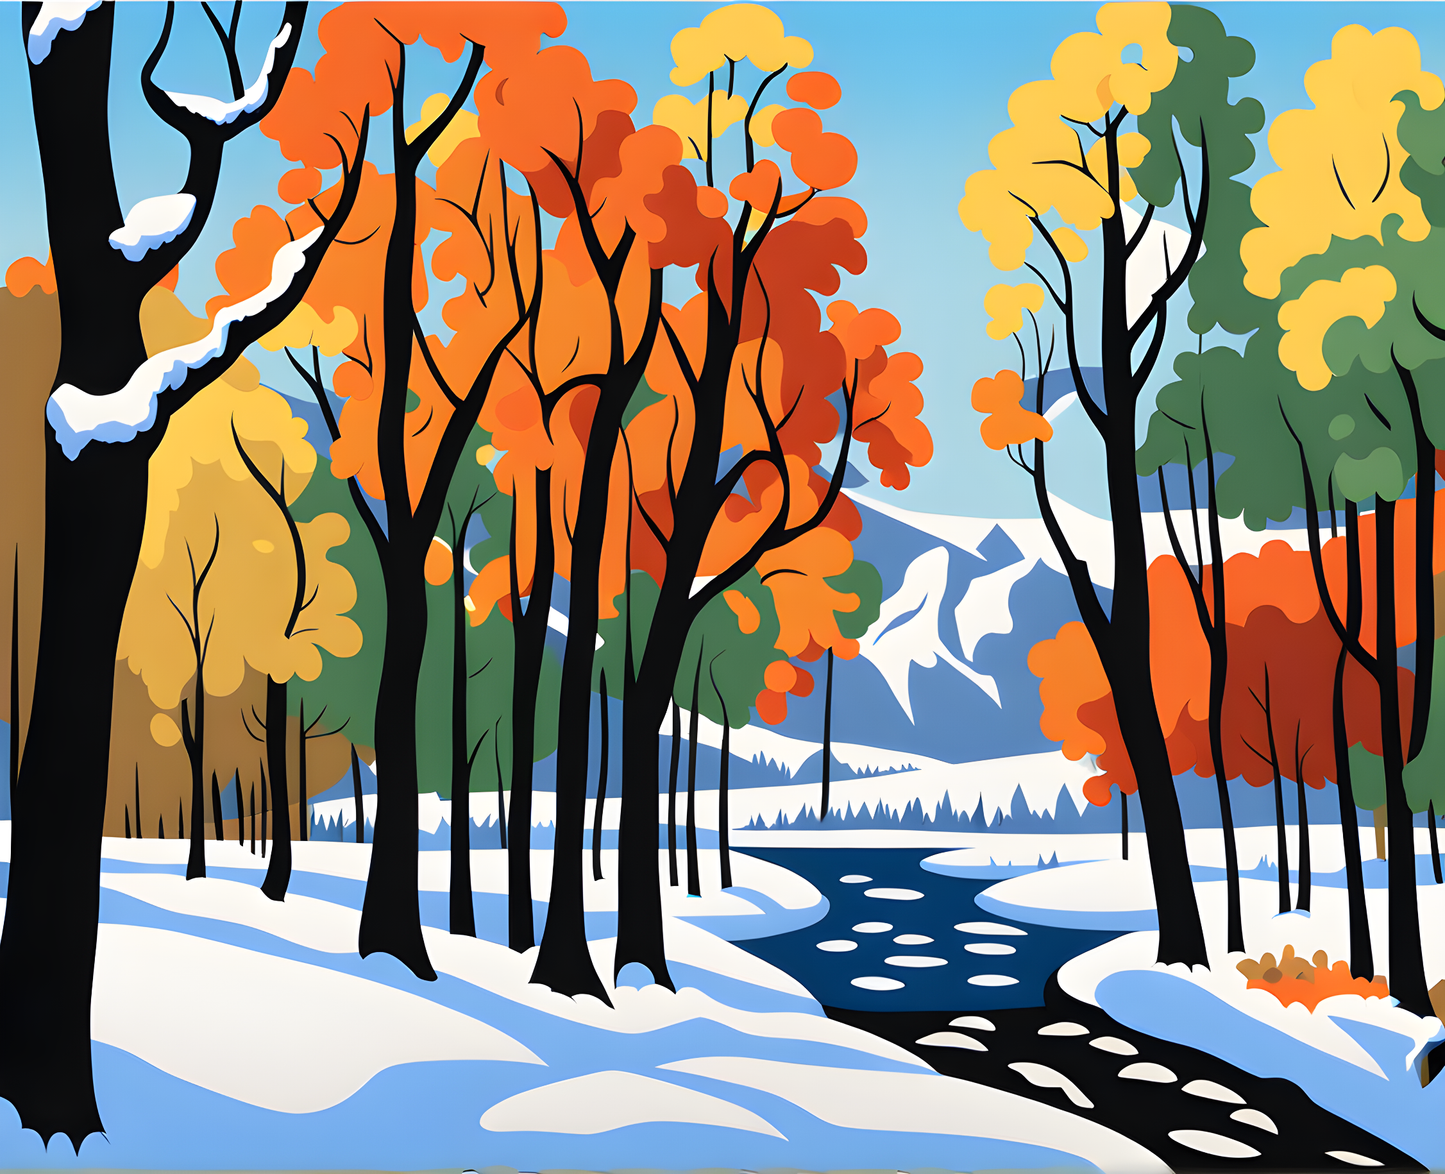 Winter landscape (1) - Van-Go Paint-By-Number Kit